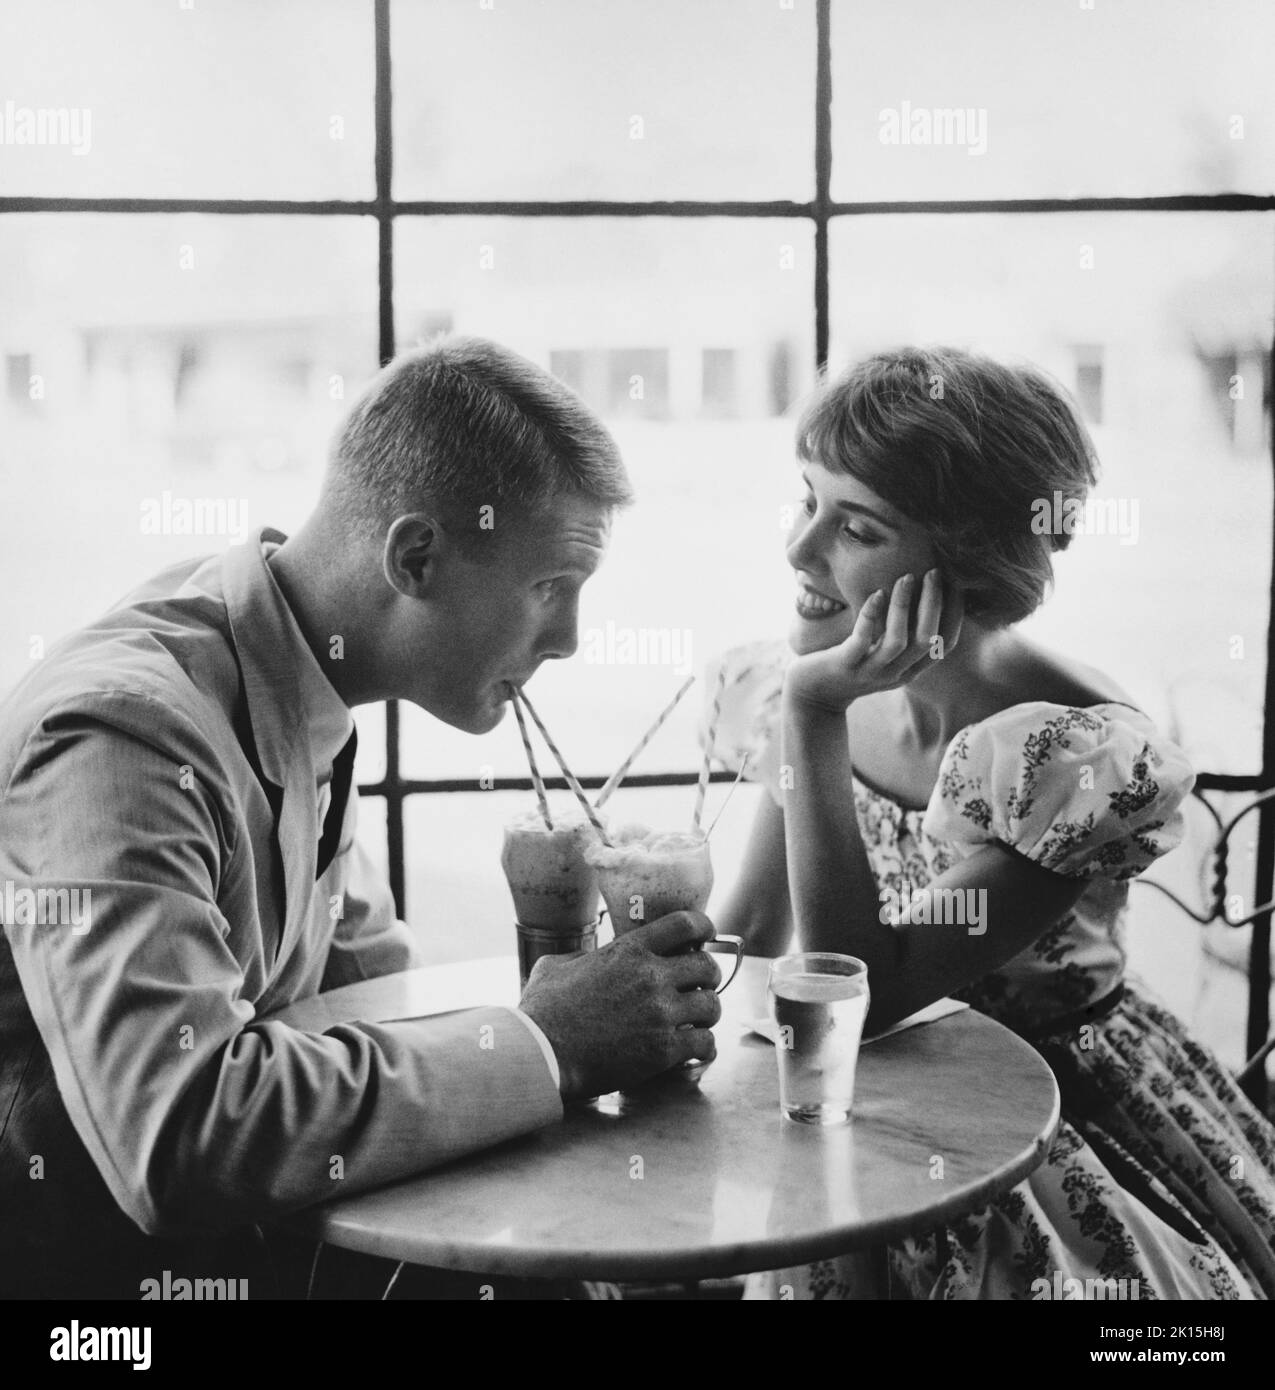 Un couple qui boit des sodas, 1950s. Banque D'Images